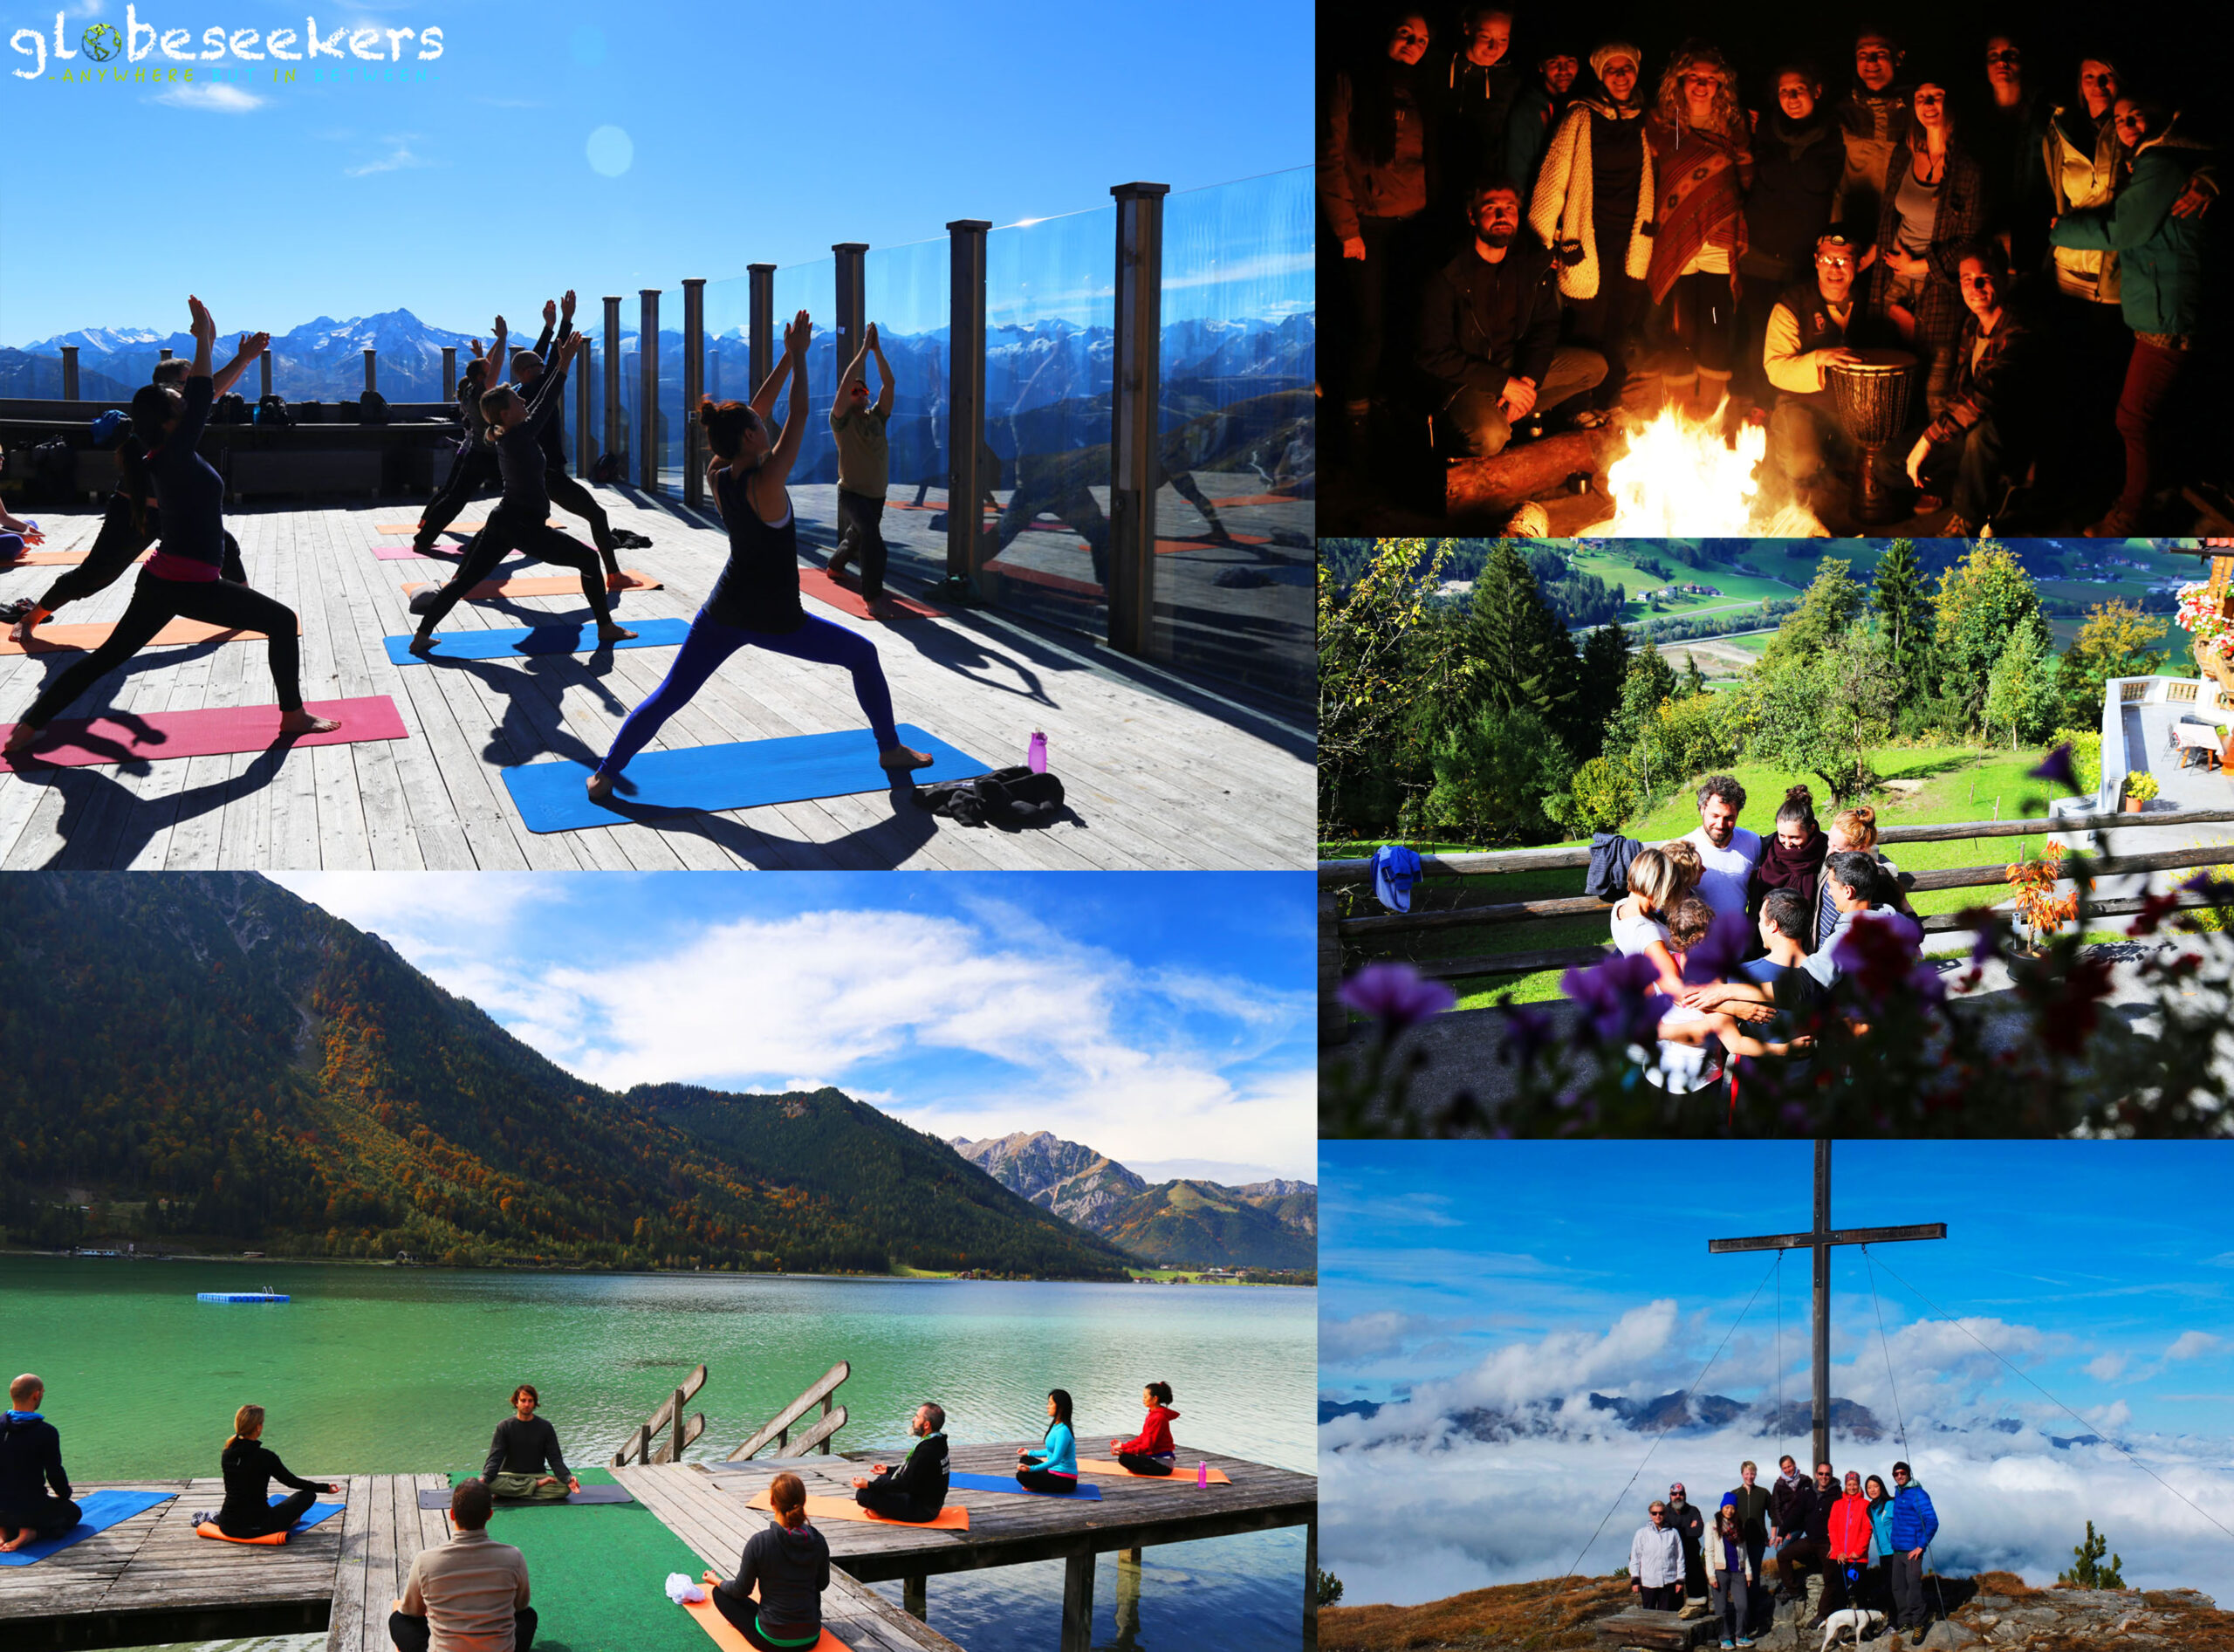 Globeseekers Outdoor & Yoga Retreat Austria 10/2015